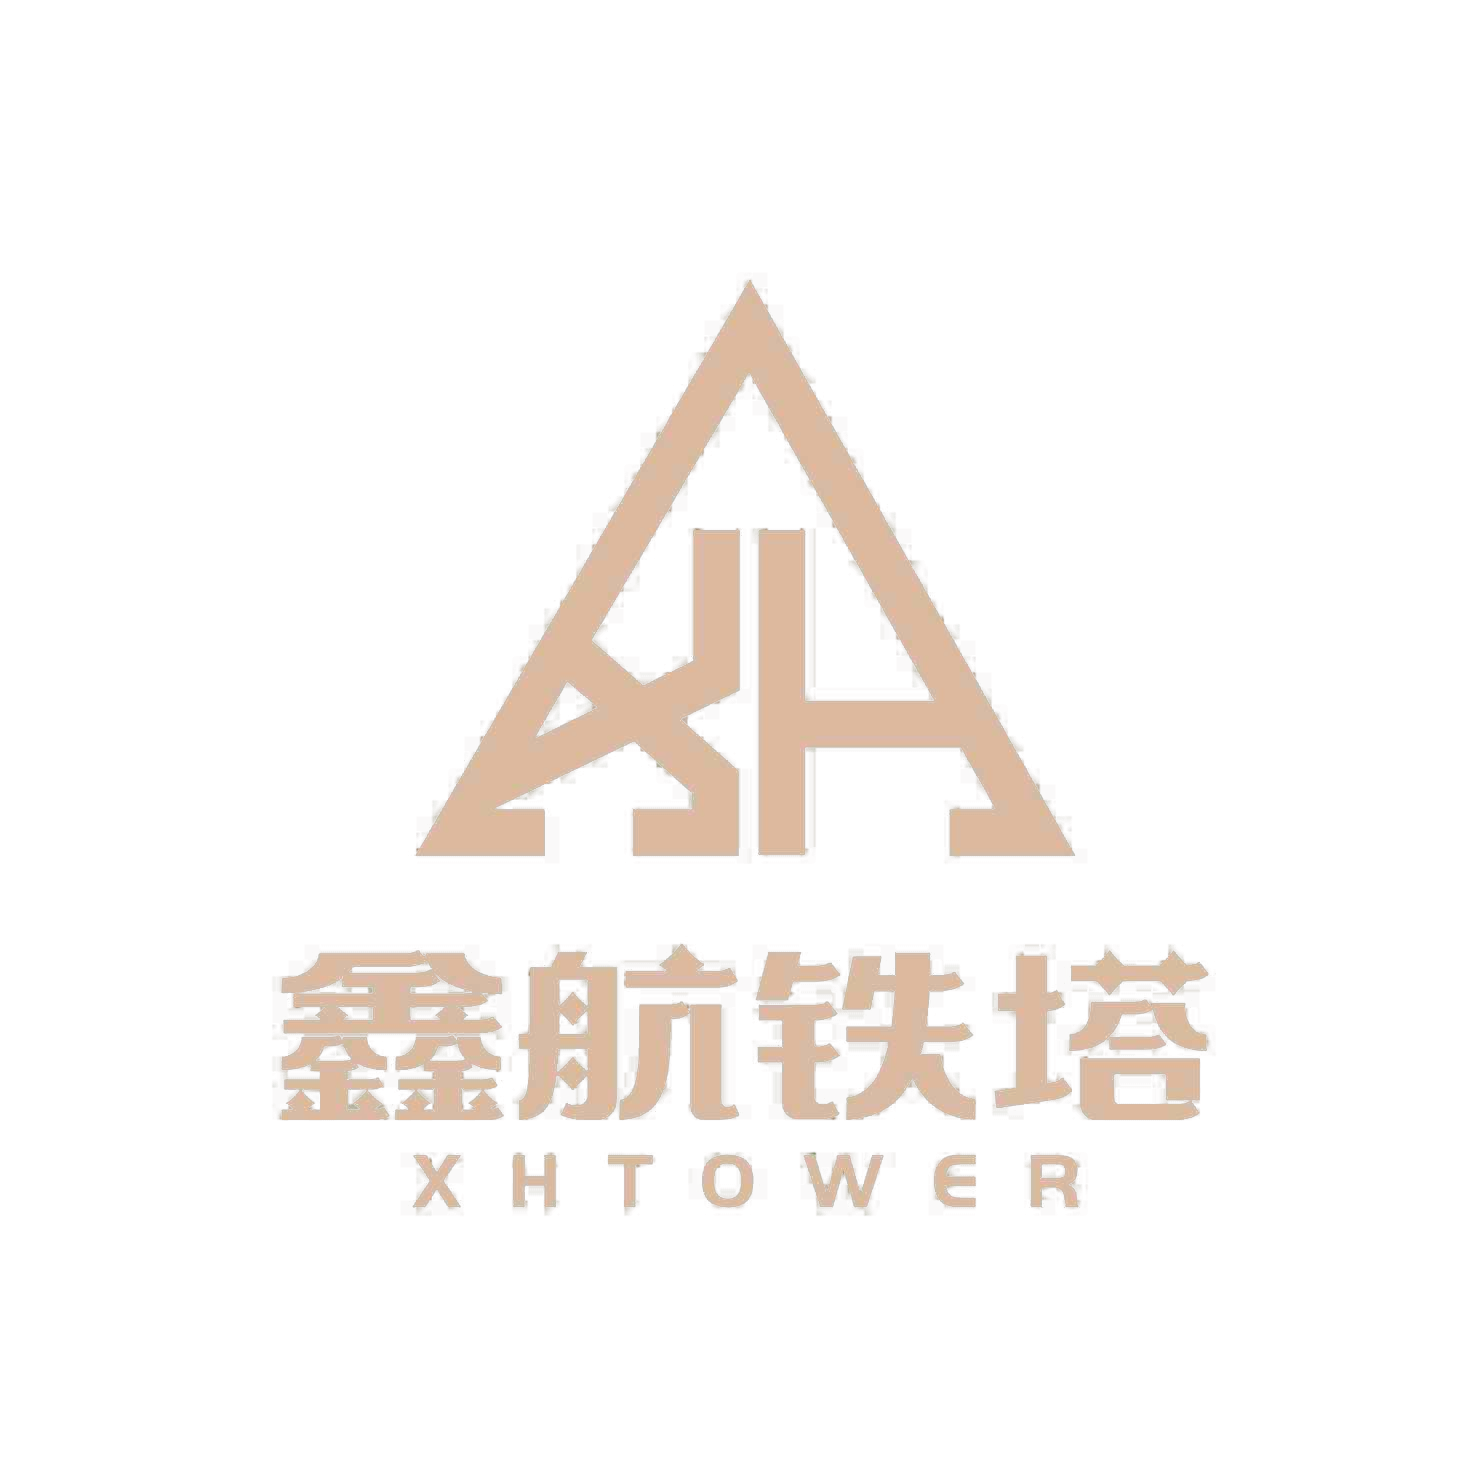 Xinhang Tower Technology Co, Ltd Xinhang Tower Technology Co, Ltd.